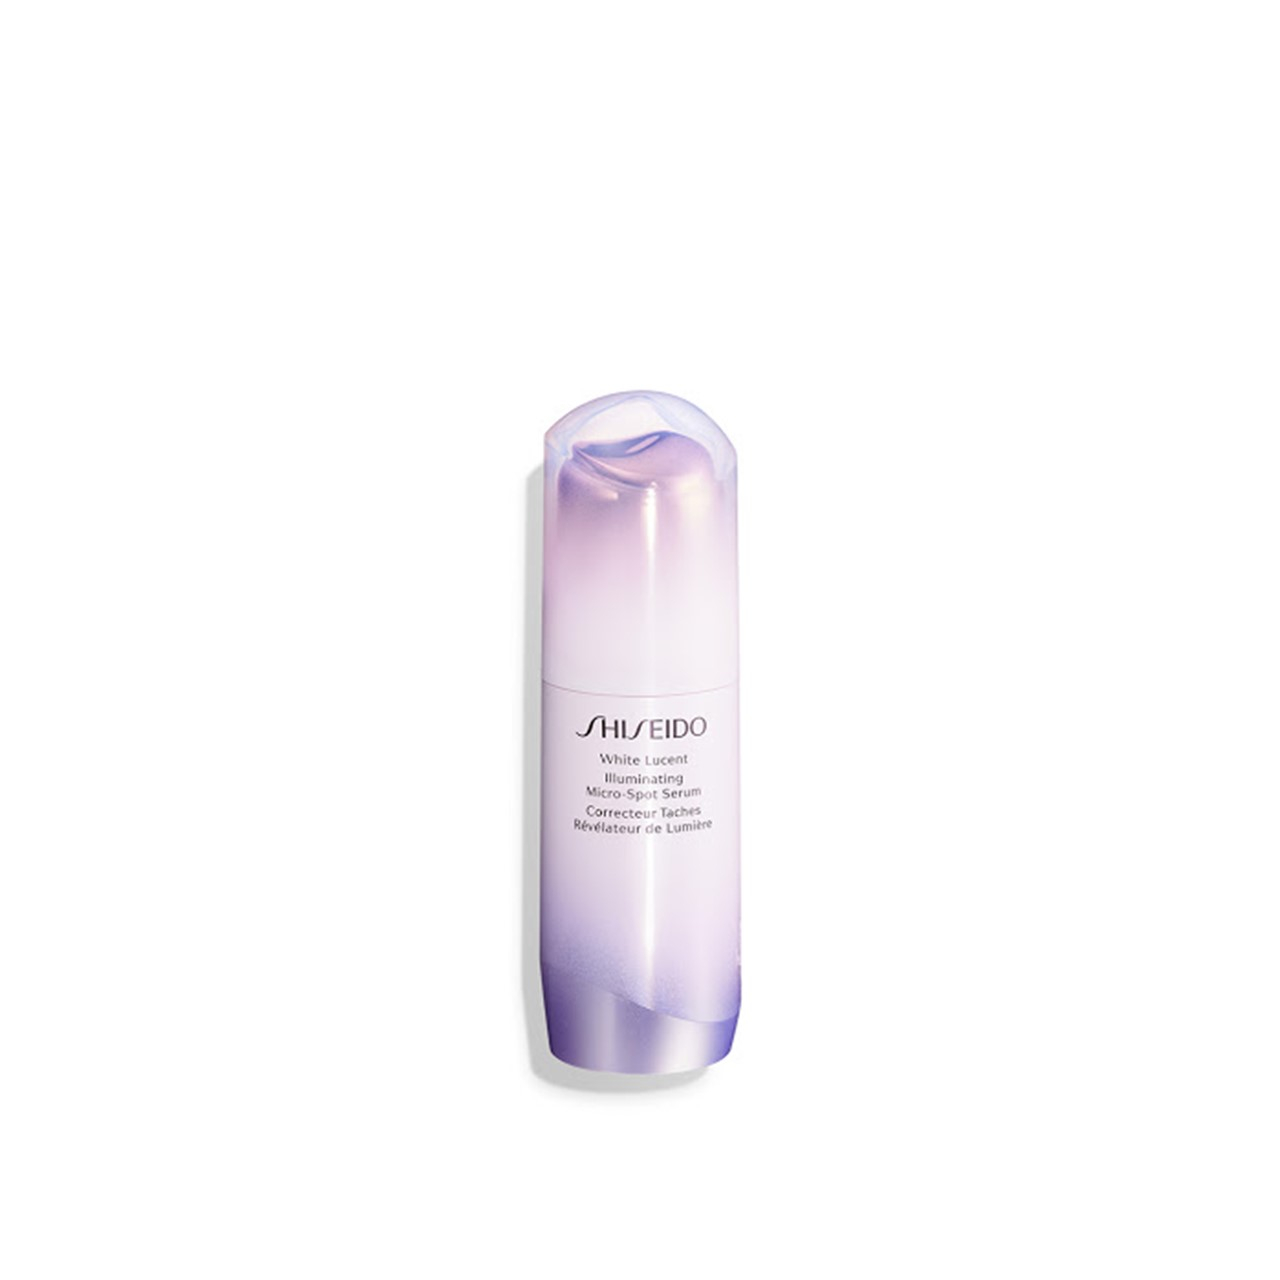 Shiseido White Lucent Illuminating Micro-Spot Serum 30ml (1.01fl oz)